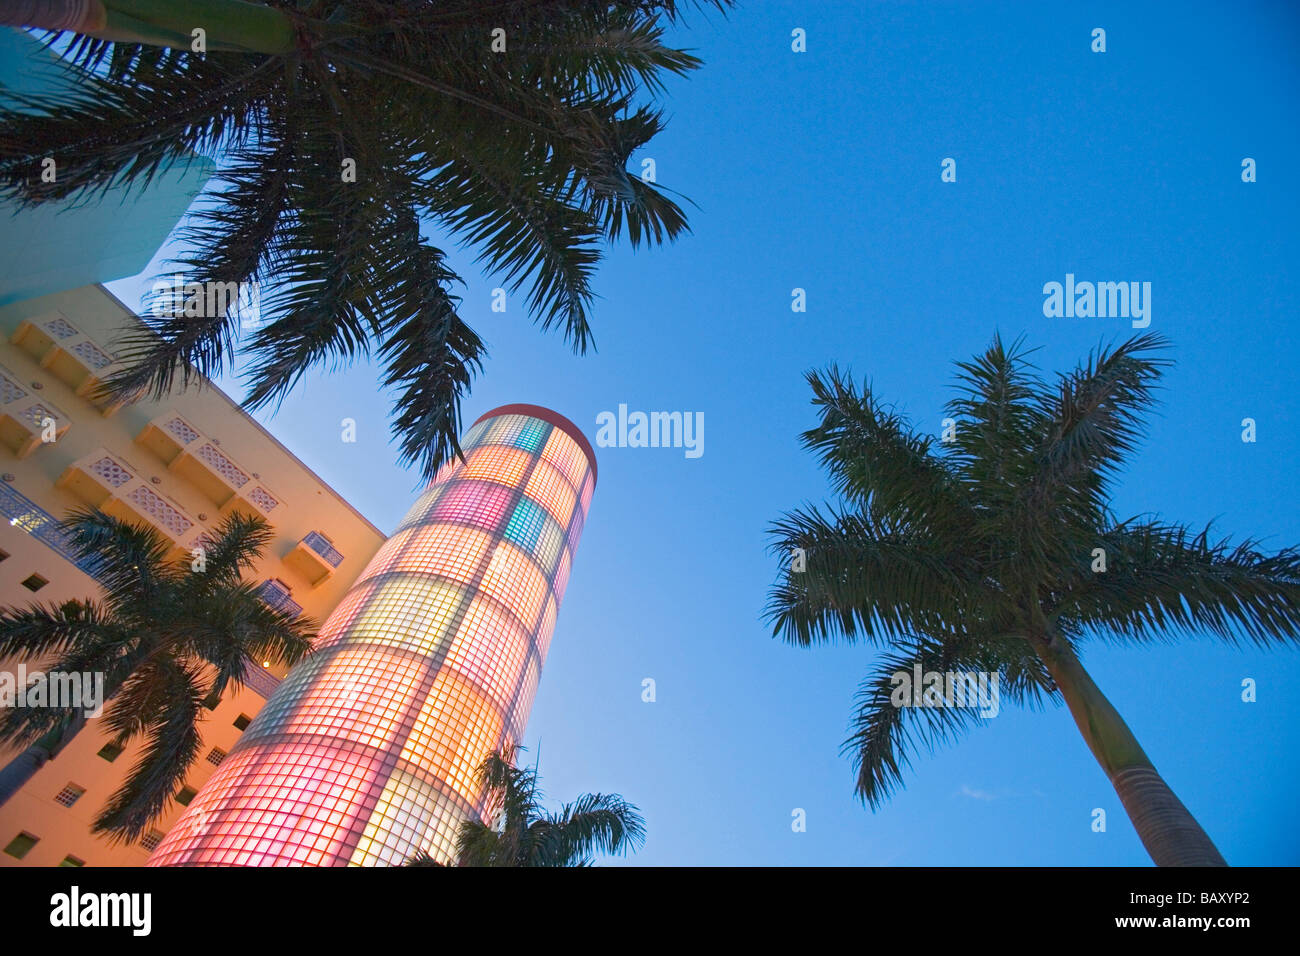 Art deco building on Washington Avenue, Miami Beach, Florida, USA Stock Photo